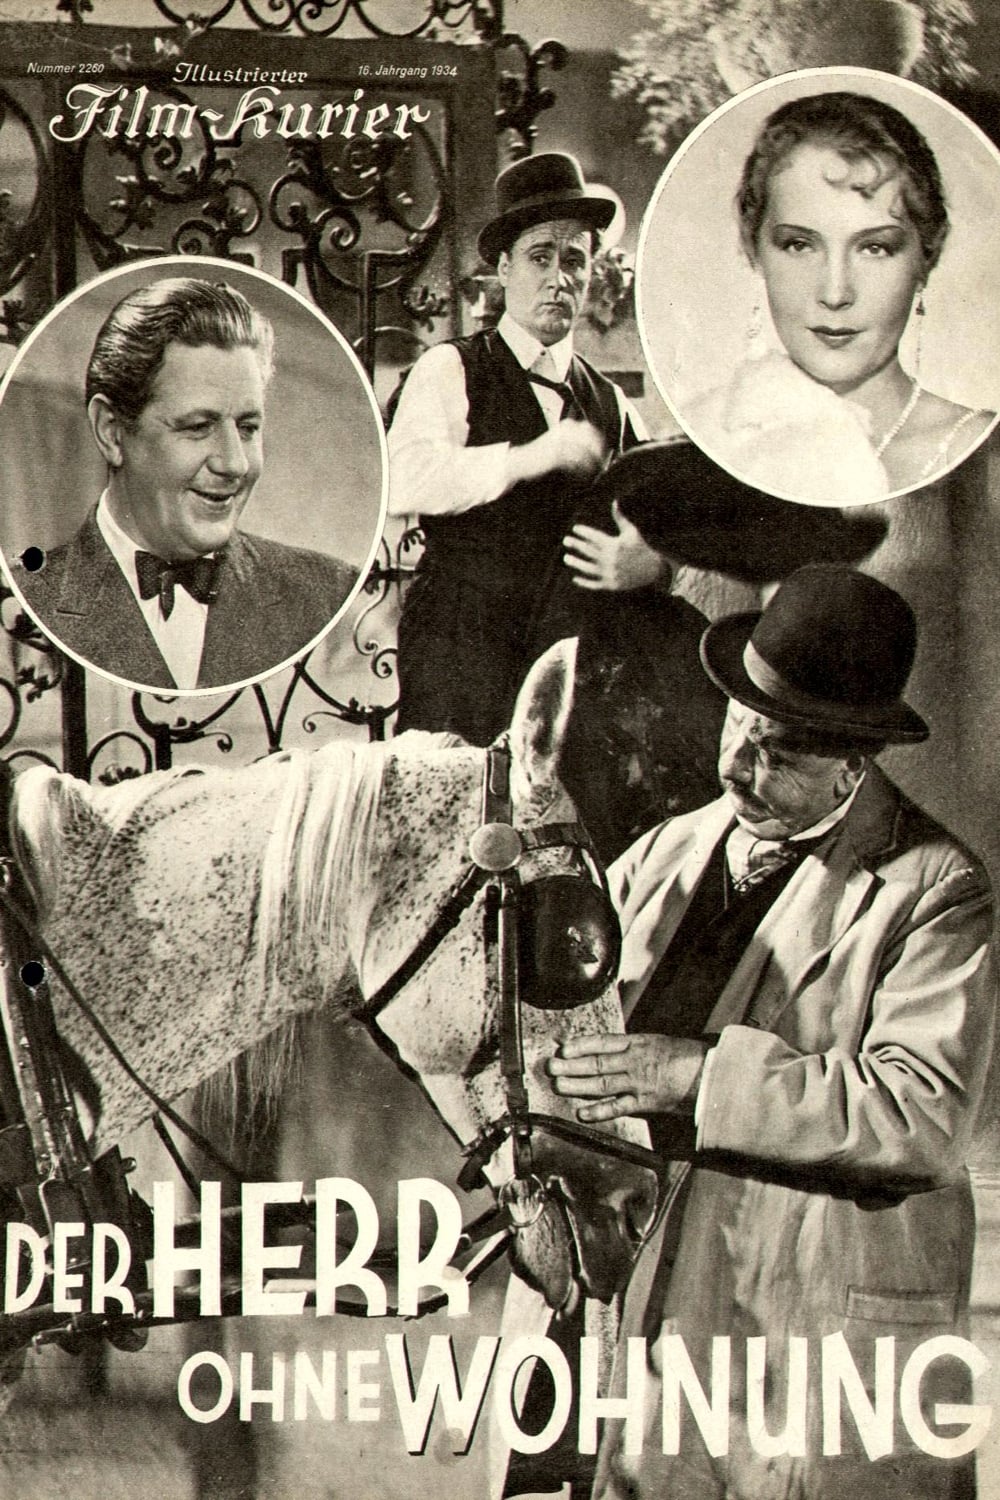 Der Herr ohne Wohnung (1934)